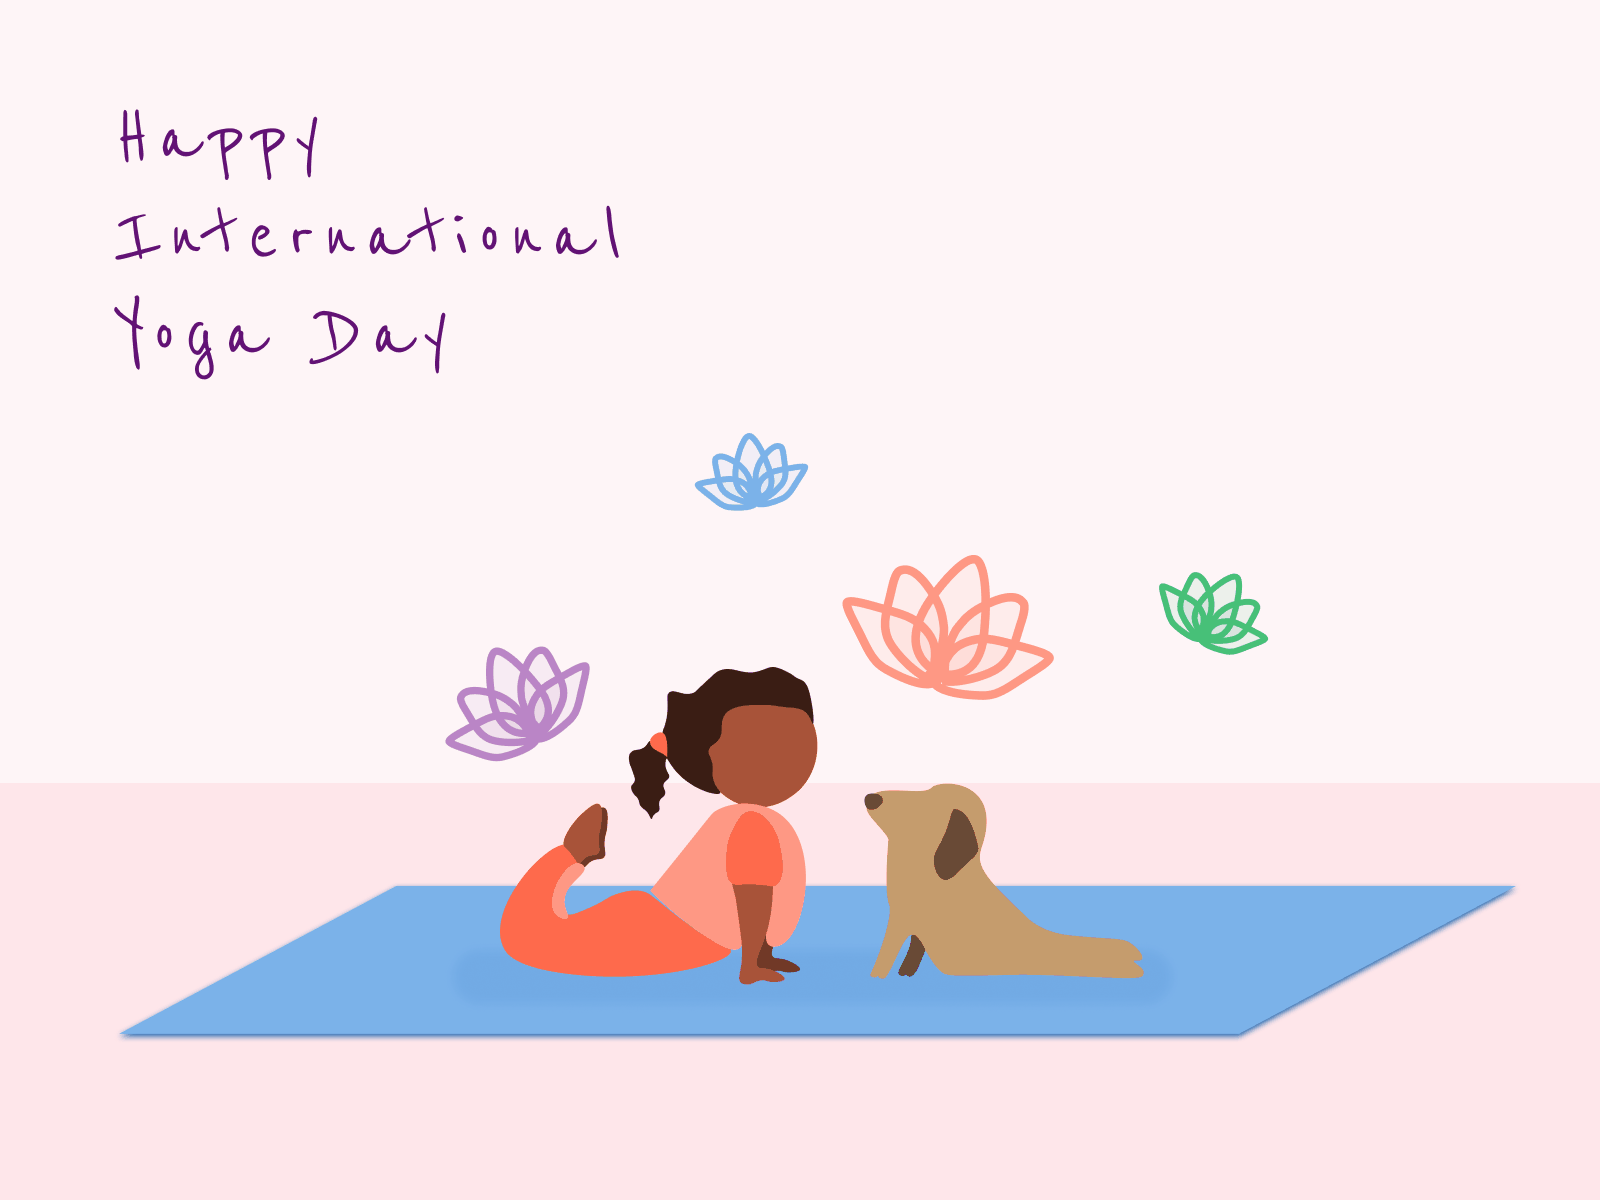 Happy International Yoga Day! by Irem Ozkaya on Dribbble